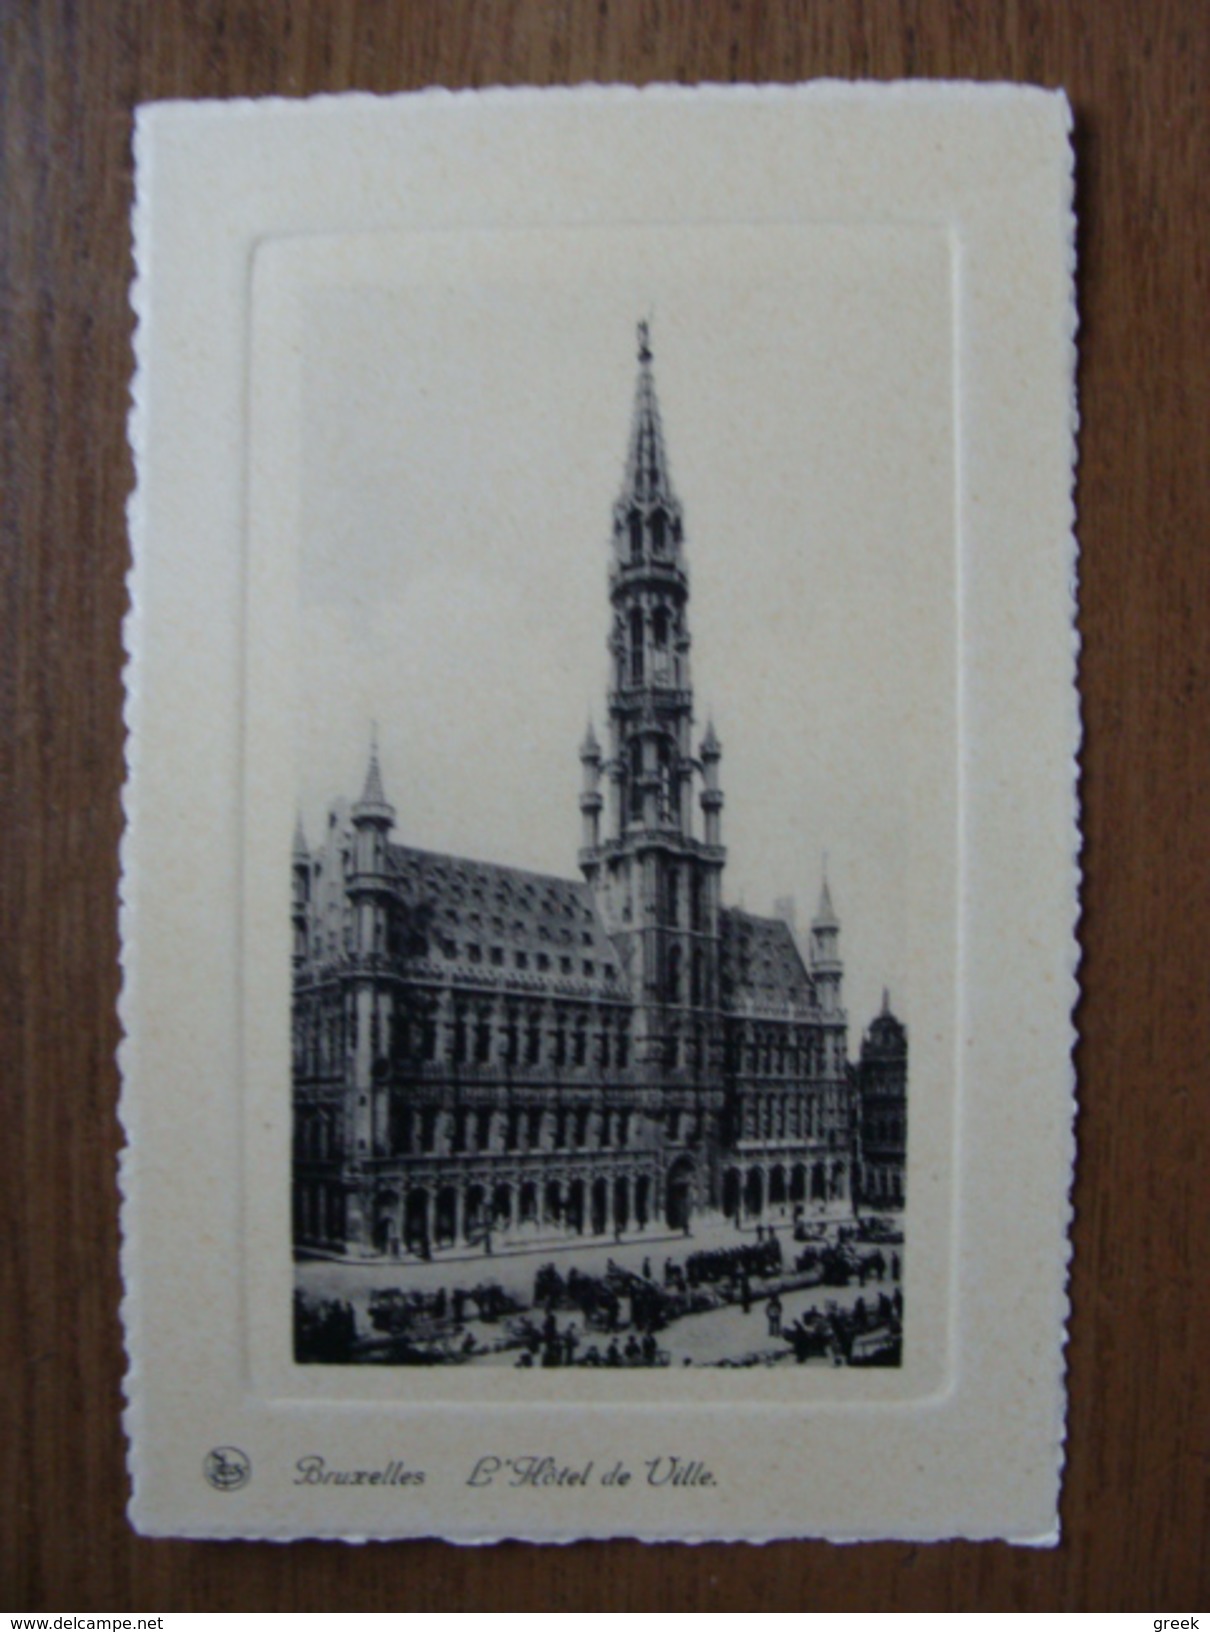 20 oude kaarten van België oa: Ieper, Lier, Gent, Antwerpen, Diksmuide, Kortrijk, Hechtel, Hasselt,  ... zie foto's (5)